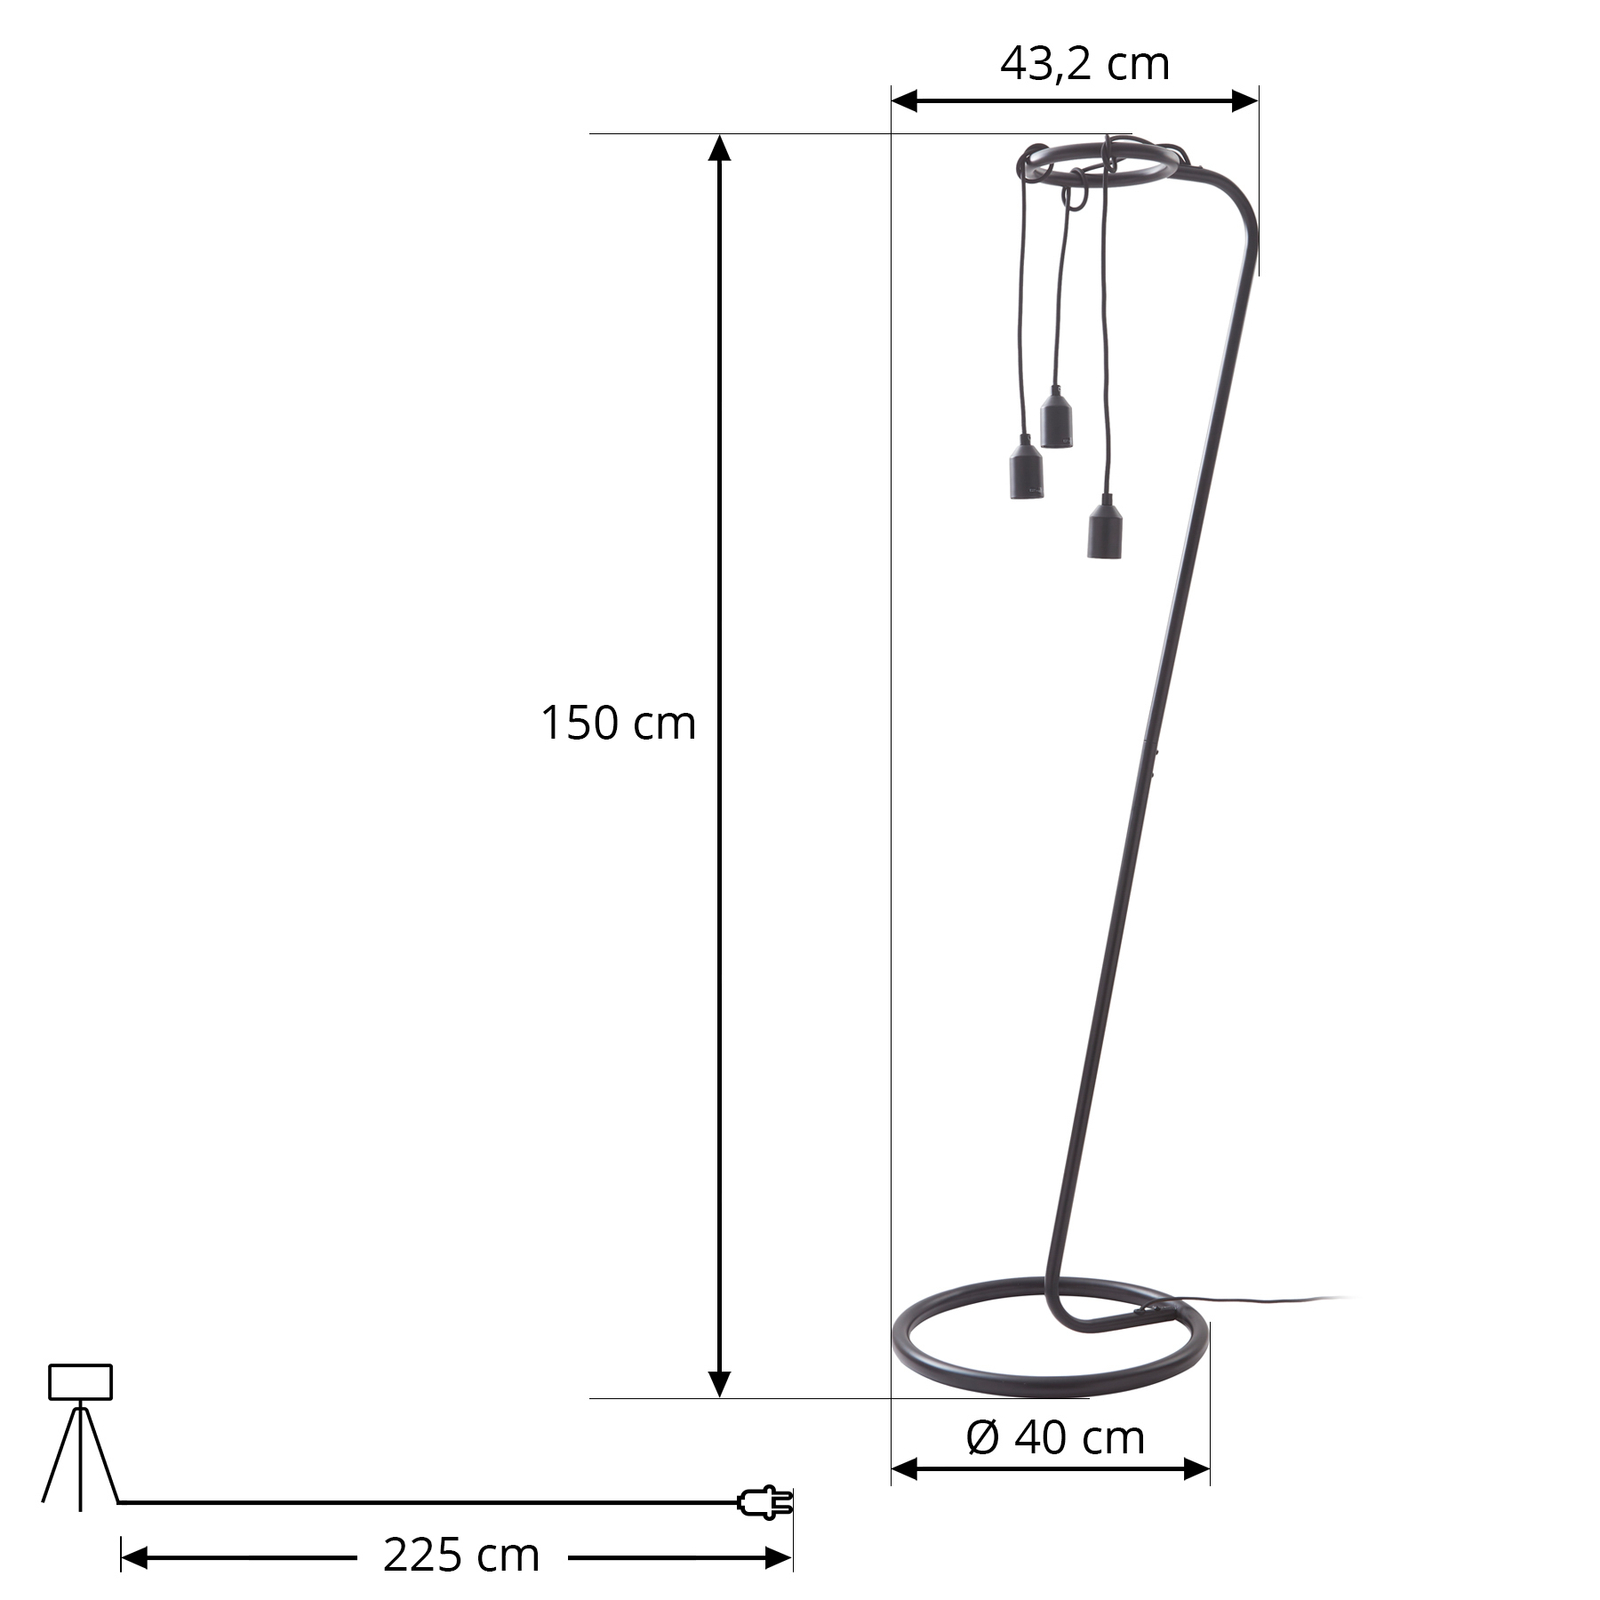 Lindby állólámpa Elira, fekete, fém, 150 cm magas, E27